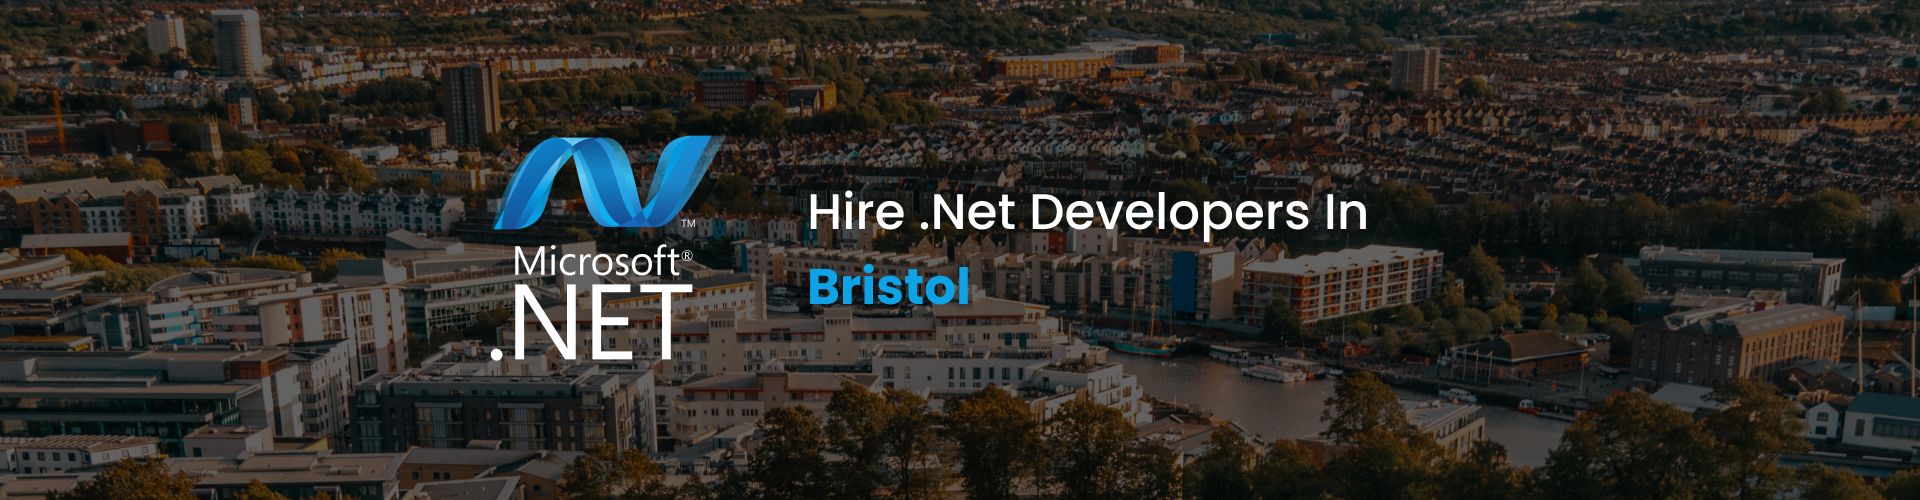 hire dot net developers in bristol